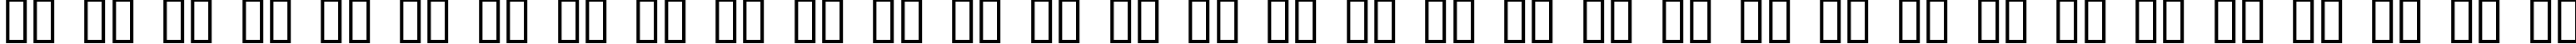 Пример написания русского алфавита шрифтом Bonk